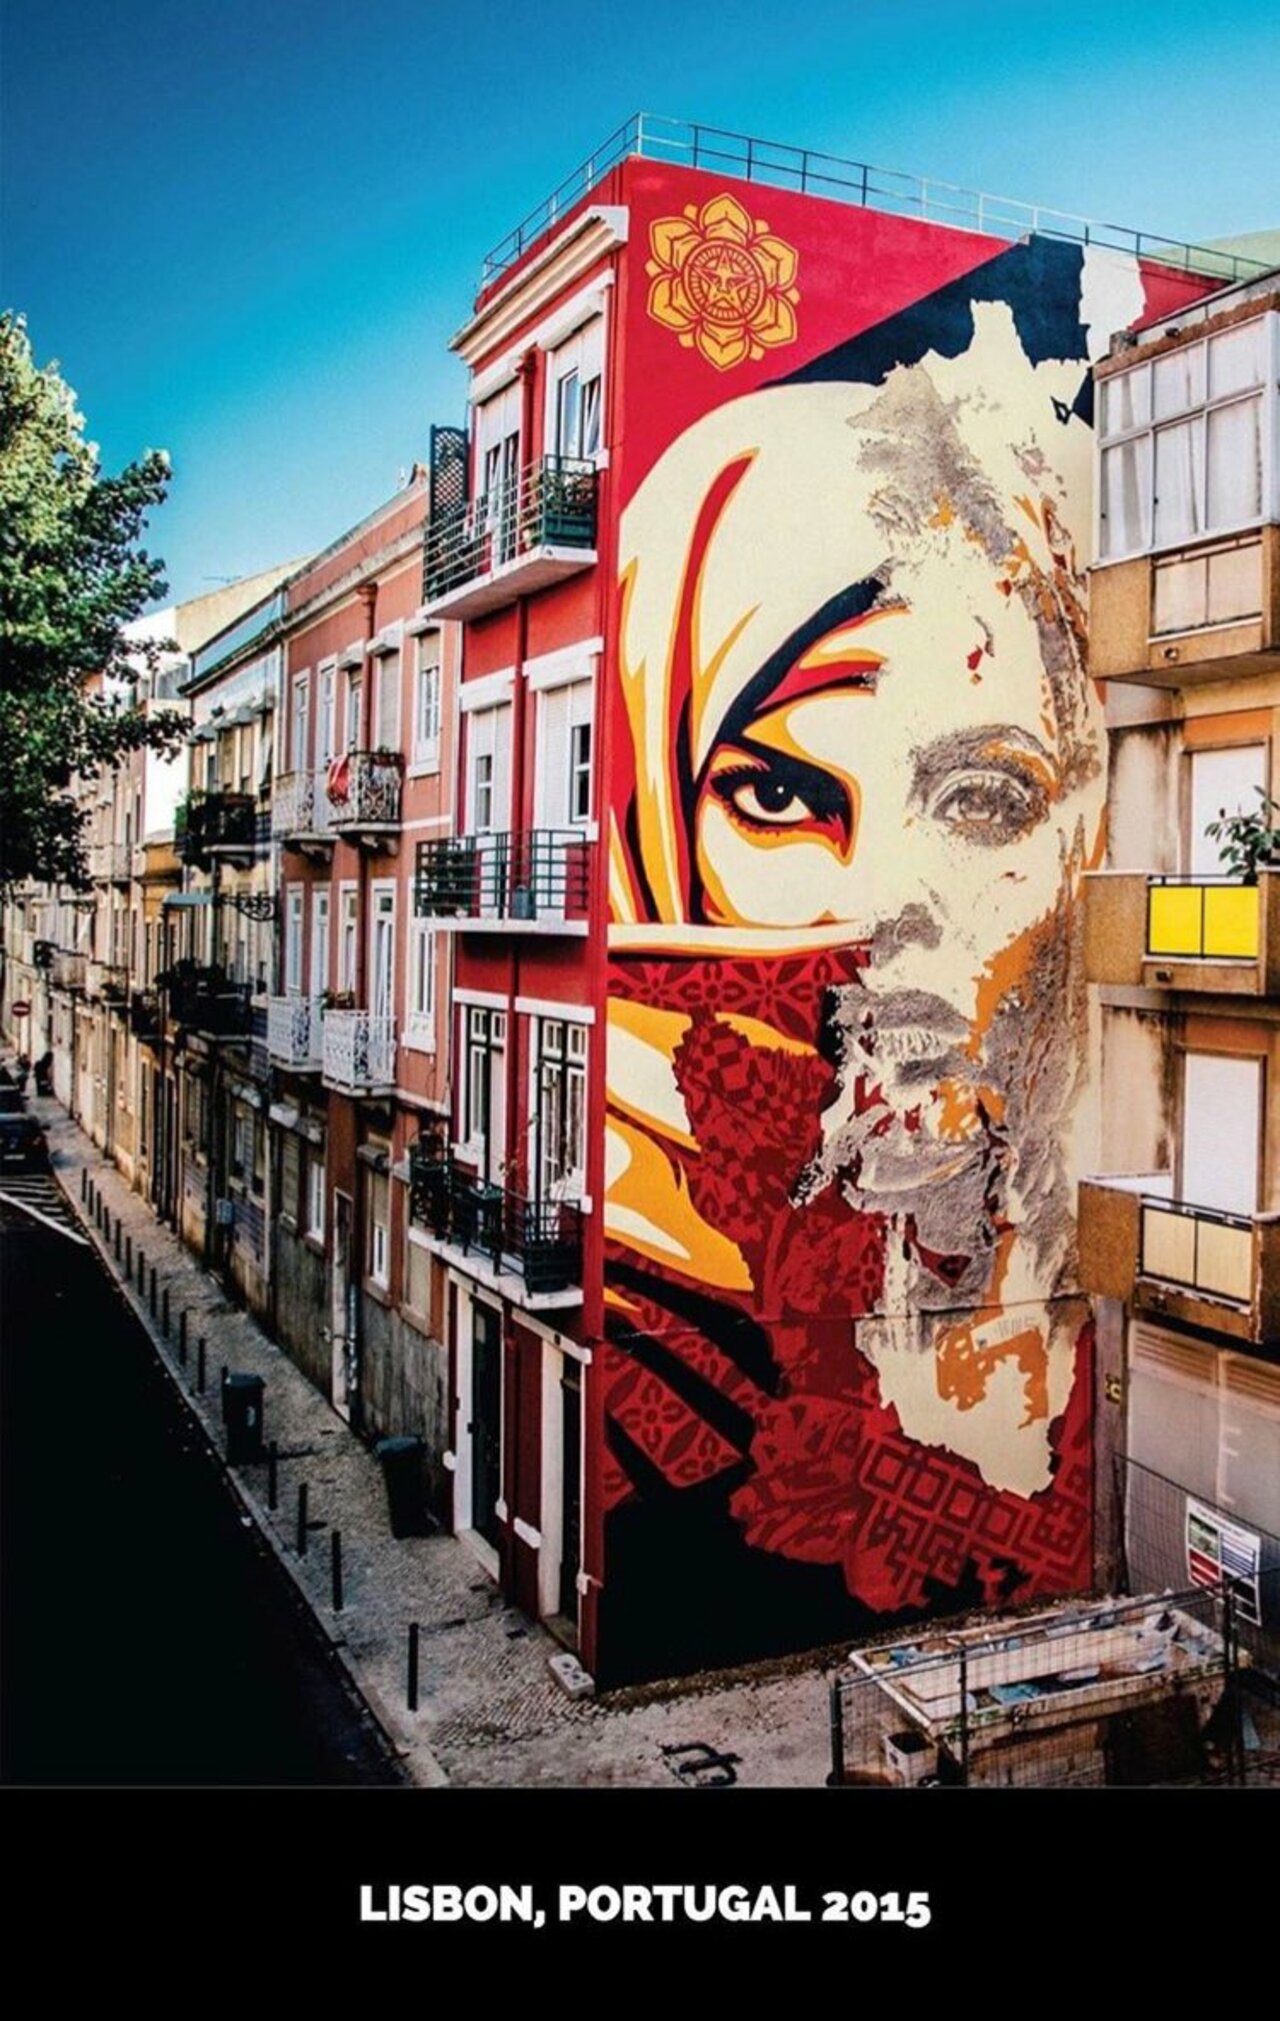 New mural by ObeyGiang in Lisbon, Portugal #streeetart #mural #graffiti #art https://t.co/FWFn97n0W8